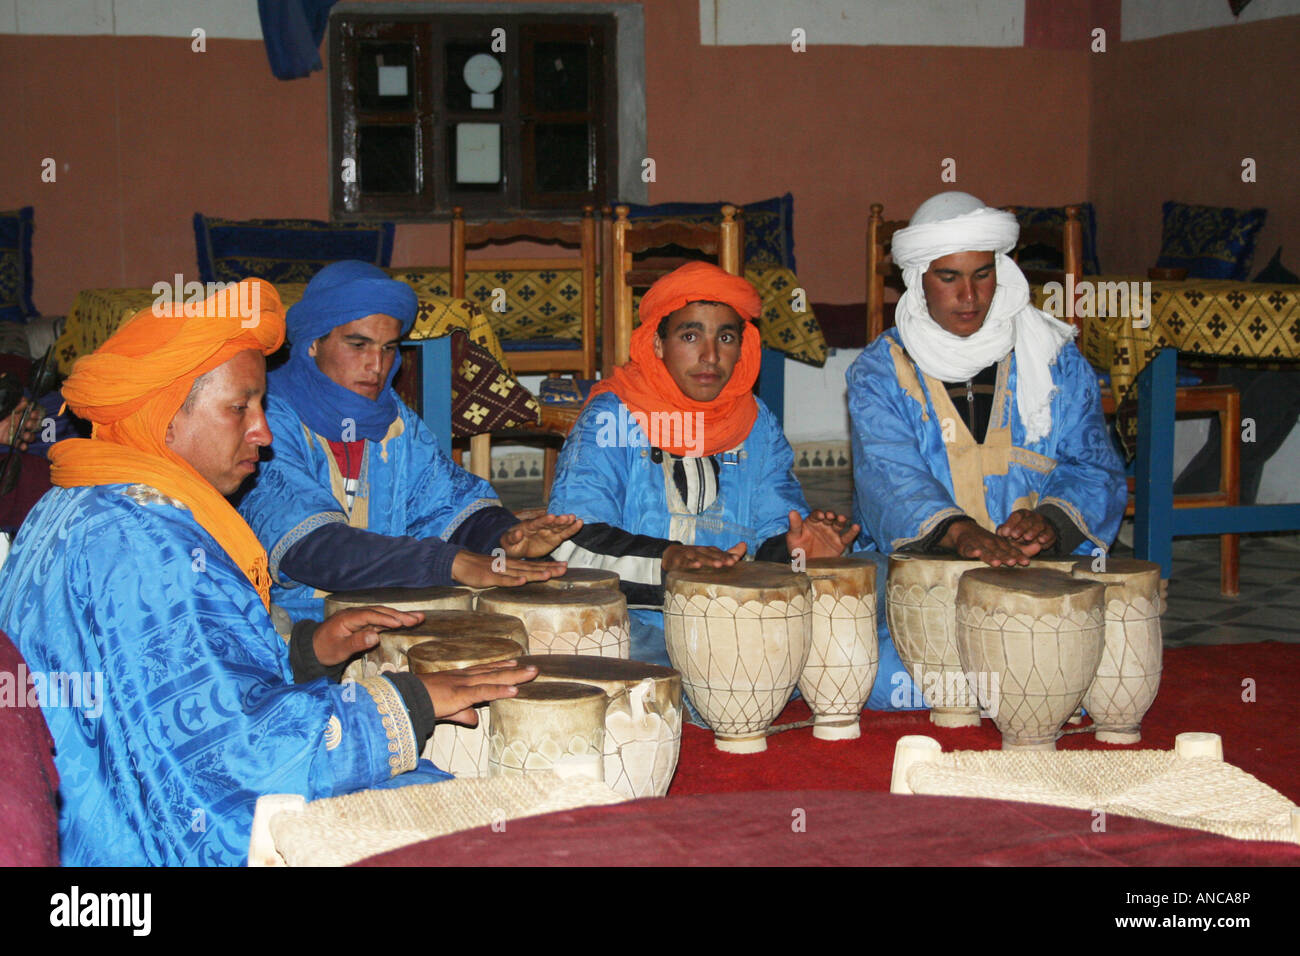 Les hommes jouant de la musique traditionnelle berbère Erg Chebbi, Maroc, Afrique du Nord Banque D'Images